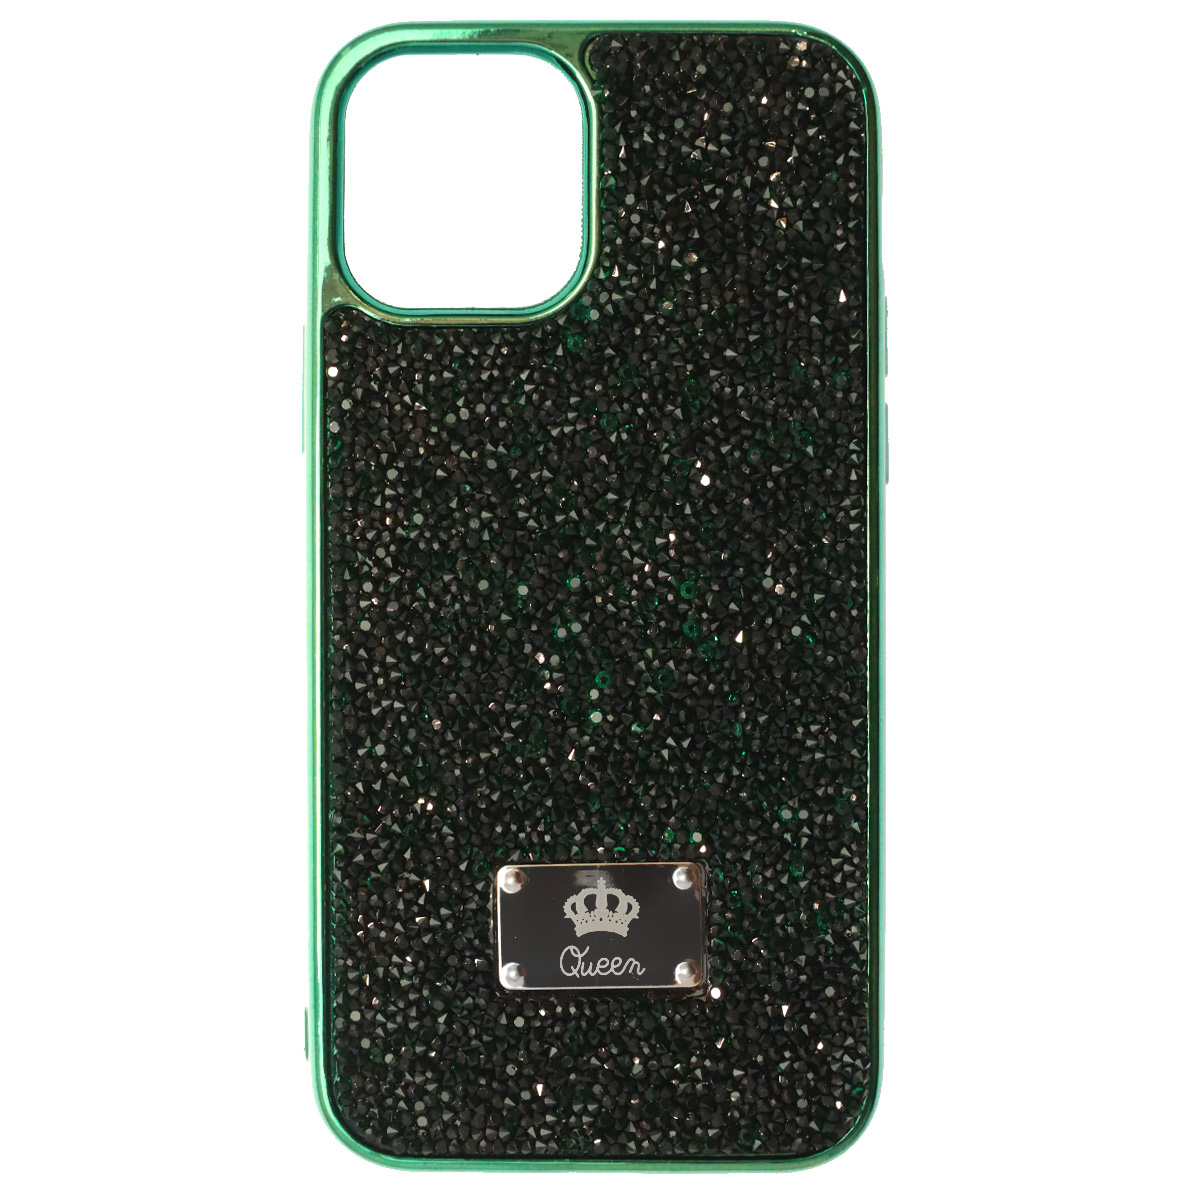 Чехол накладка Queen для APPLE iPhone 12, iPhone 12 Pro, силикон, стразы, цвет зеленый